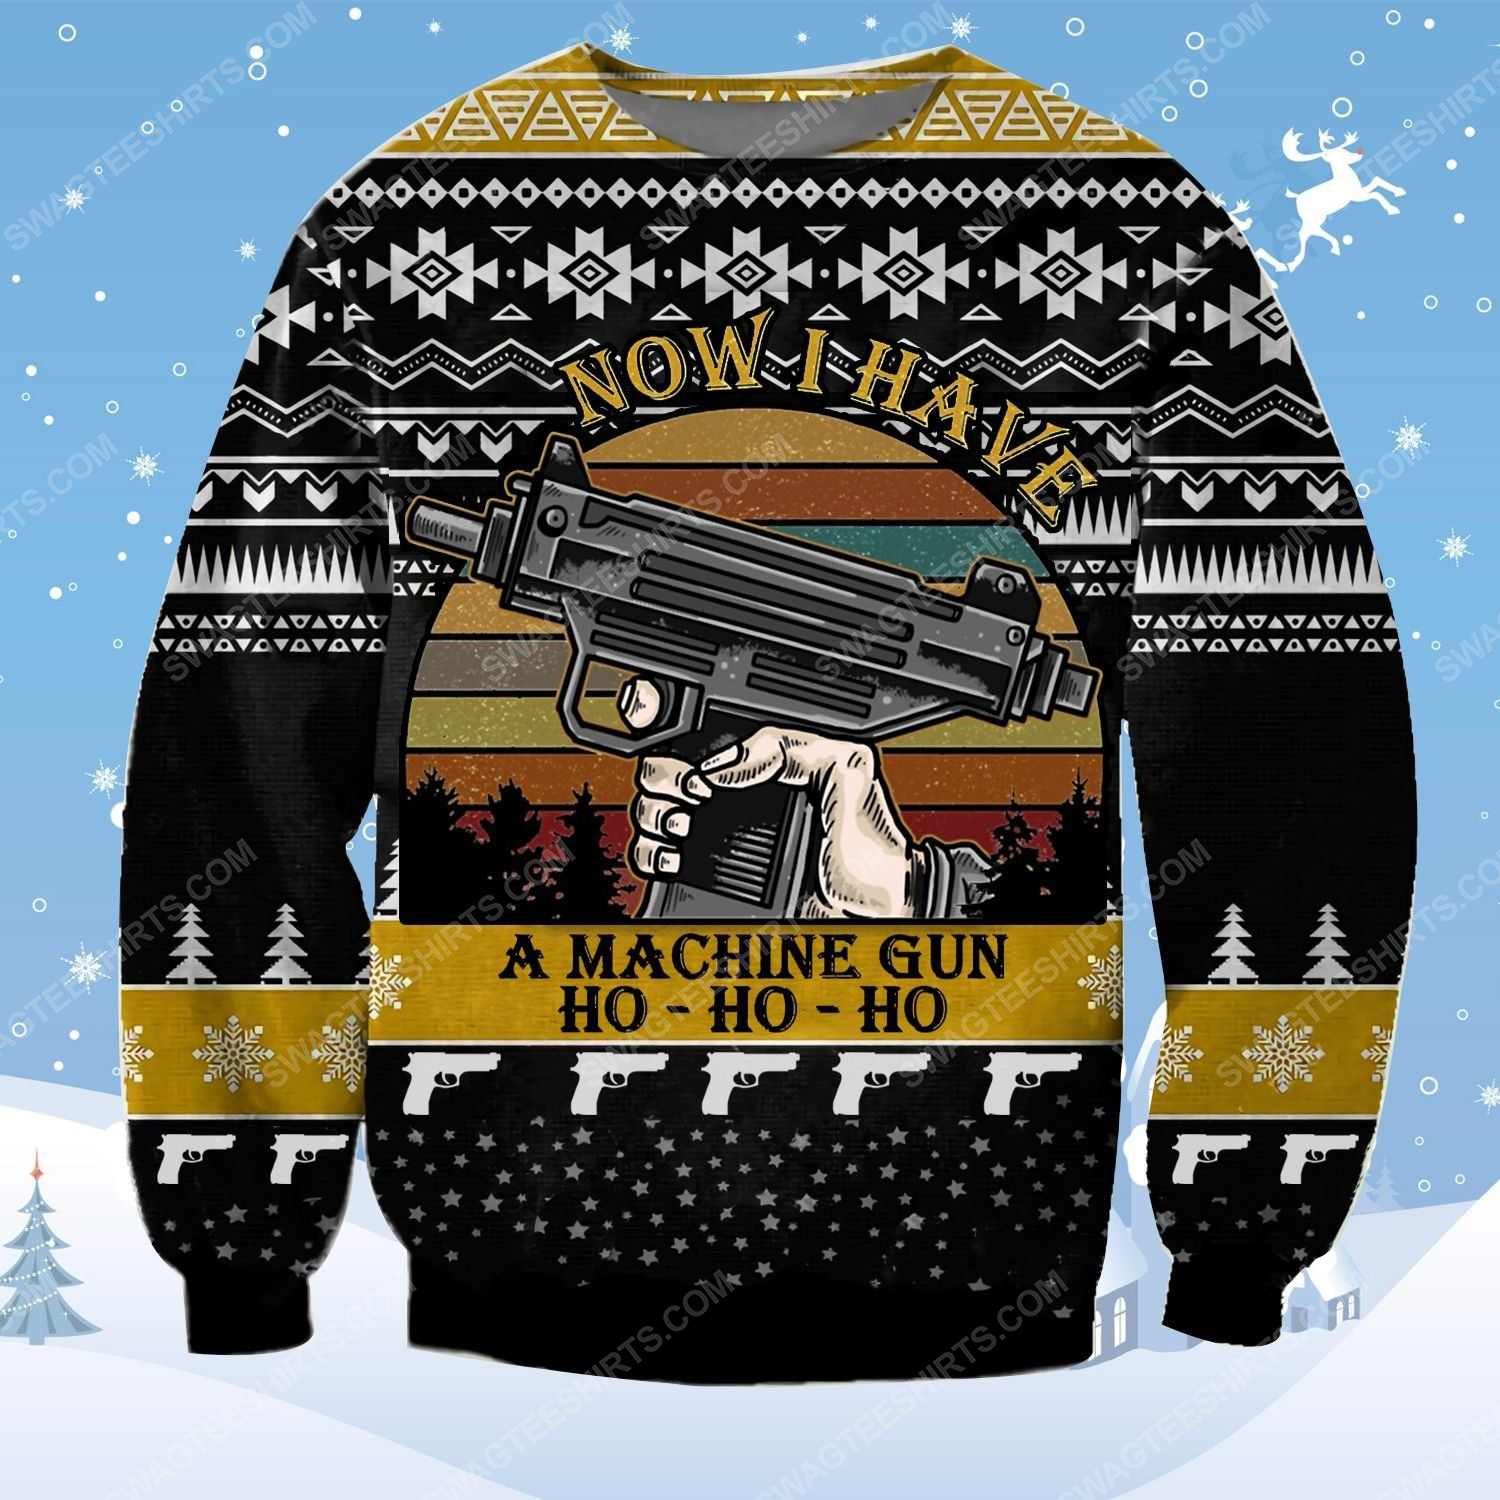 Die hard now i have a machine gun ho-ho-ho ugly christmas sweater 1 - Copy (2)